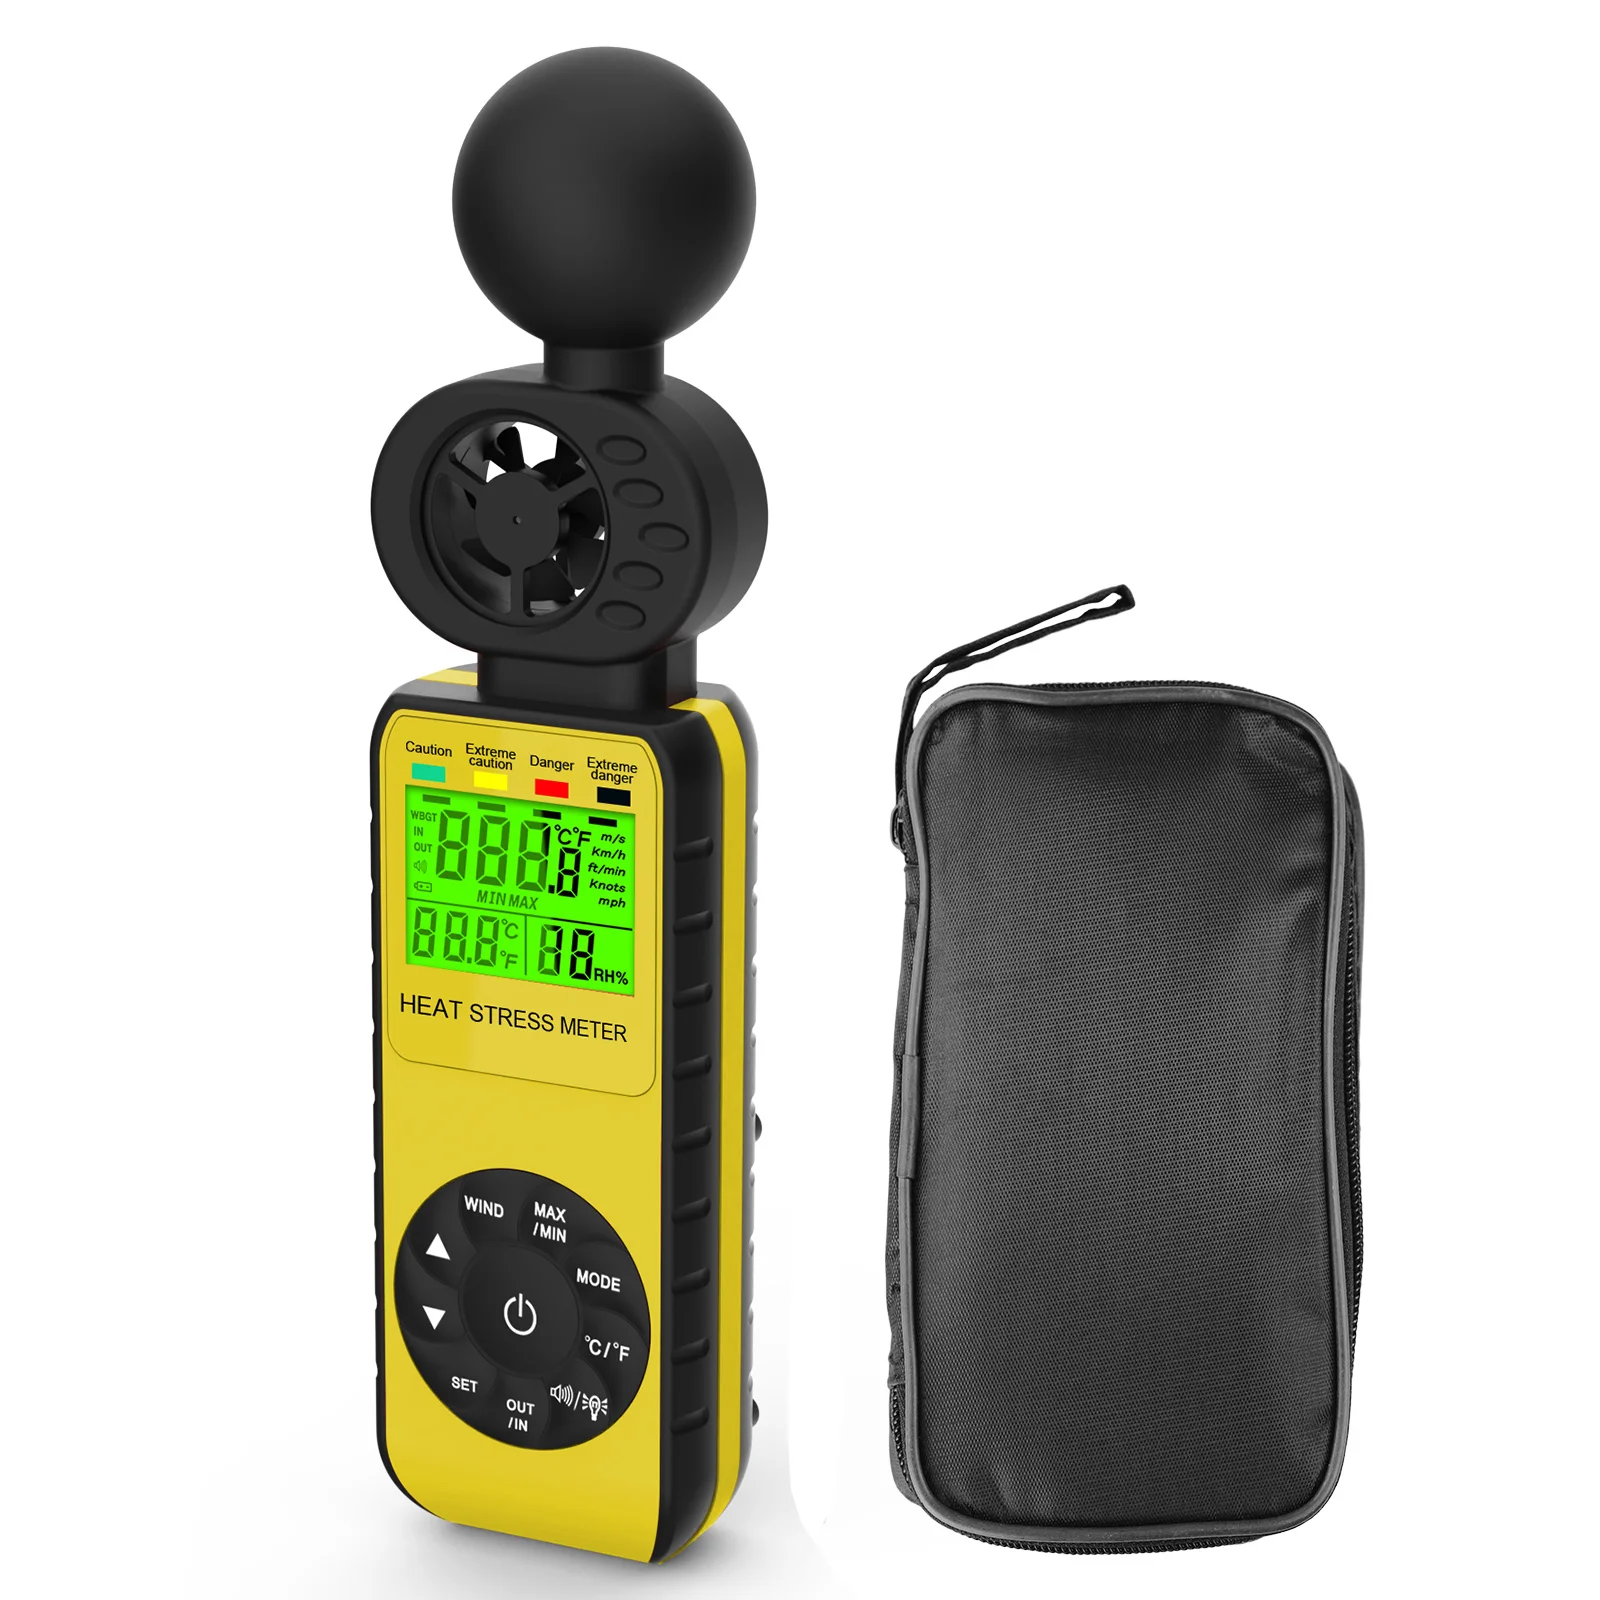 

Holdpeak 881W Air Anemometer RPM Meter Wind Digital Tachometer Handheld 4 In 1 Wind Speed Meter With Humidity Temperature Test